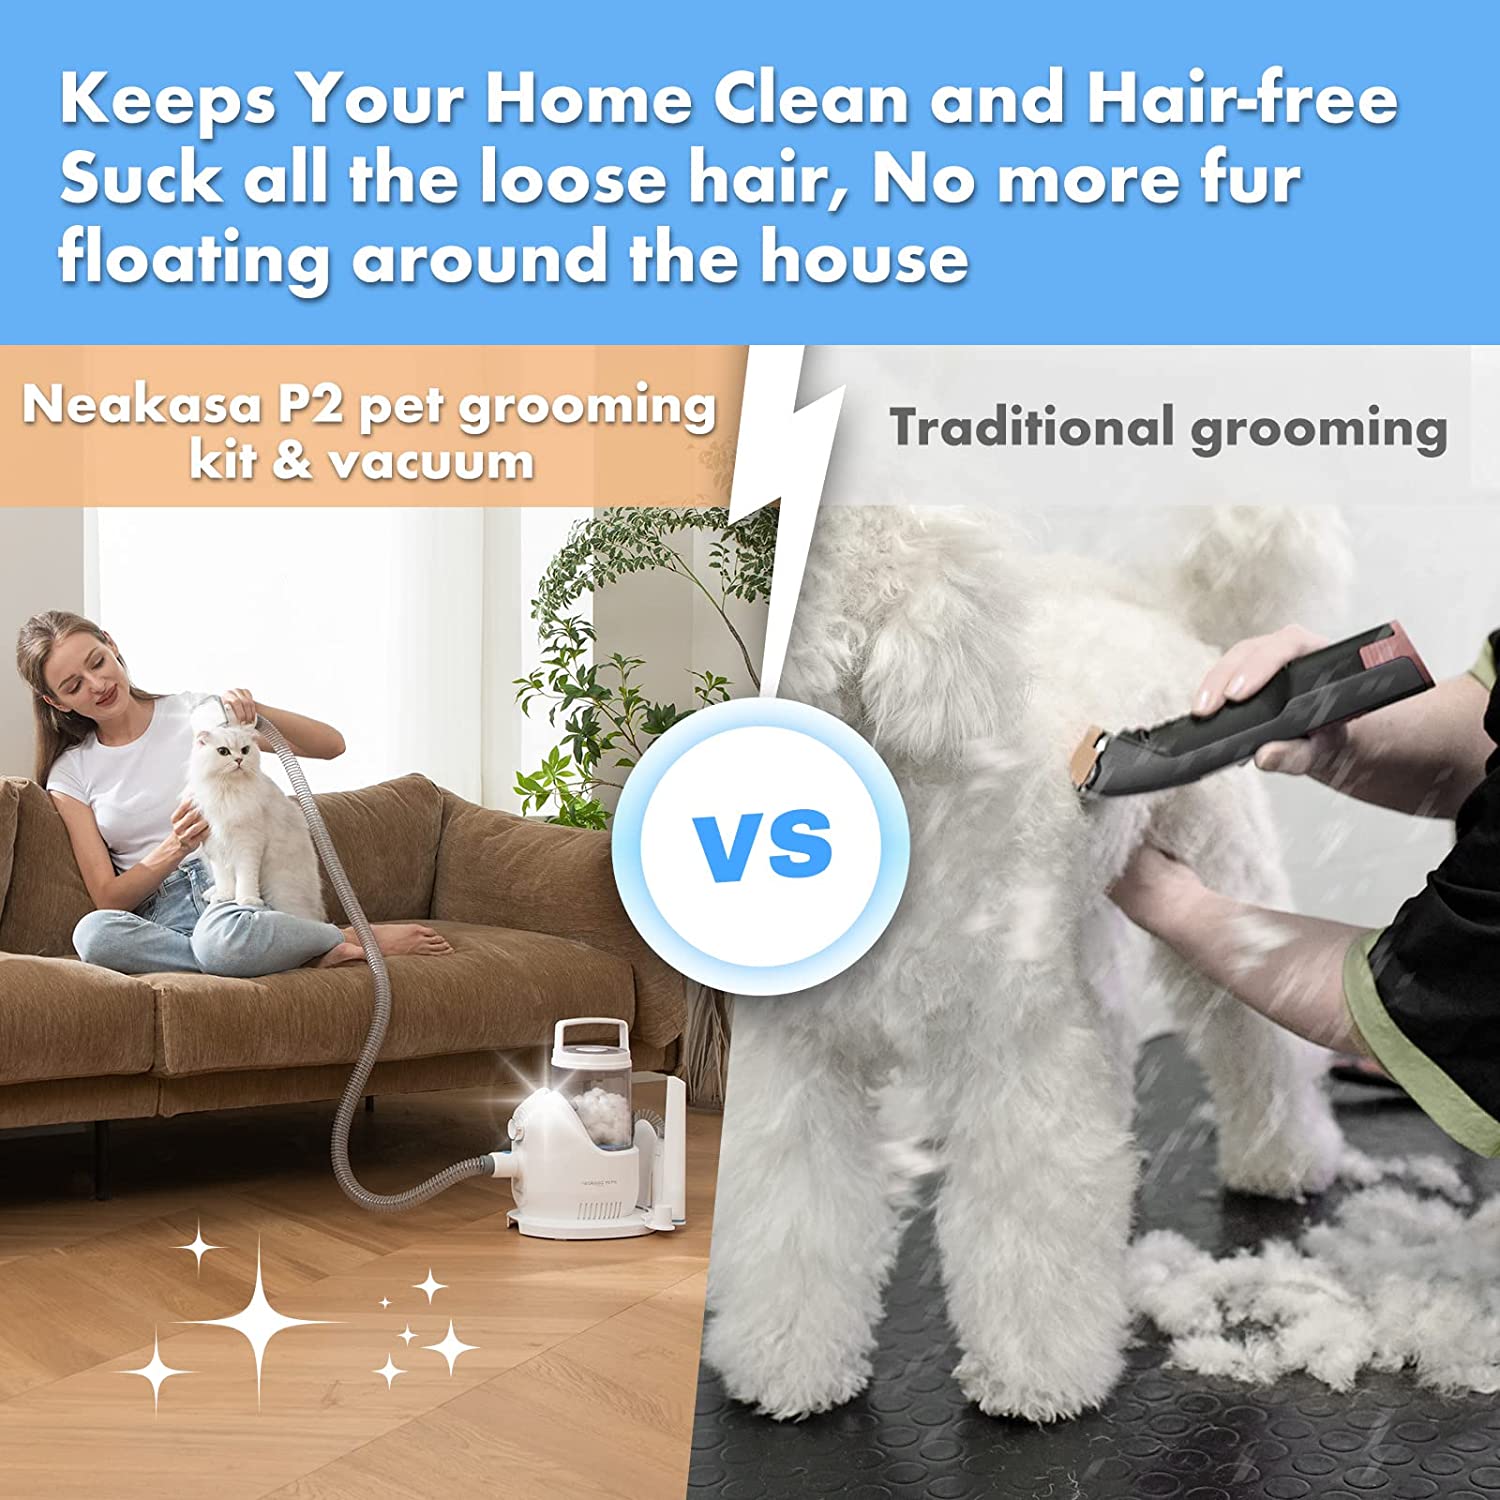 گیره برقی عملکرد برش عالی را ارائه می دهد. ابزار نازل و برس تمیز کننده را می توان برای جمع آوری موهای حیوانات خانگی که روی فرش، مبل و زمین می ریزد استفاده کرد.